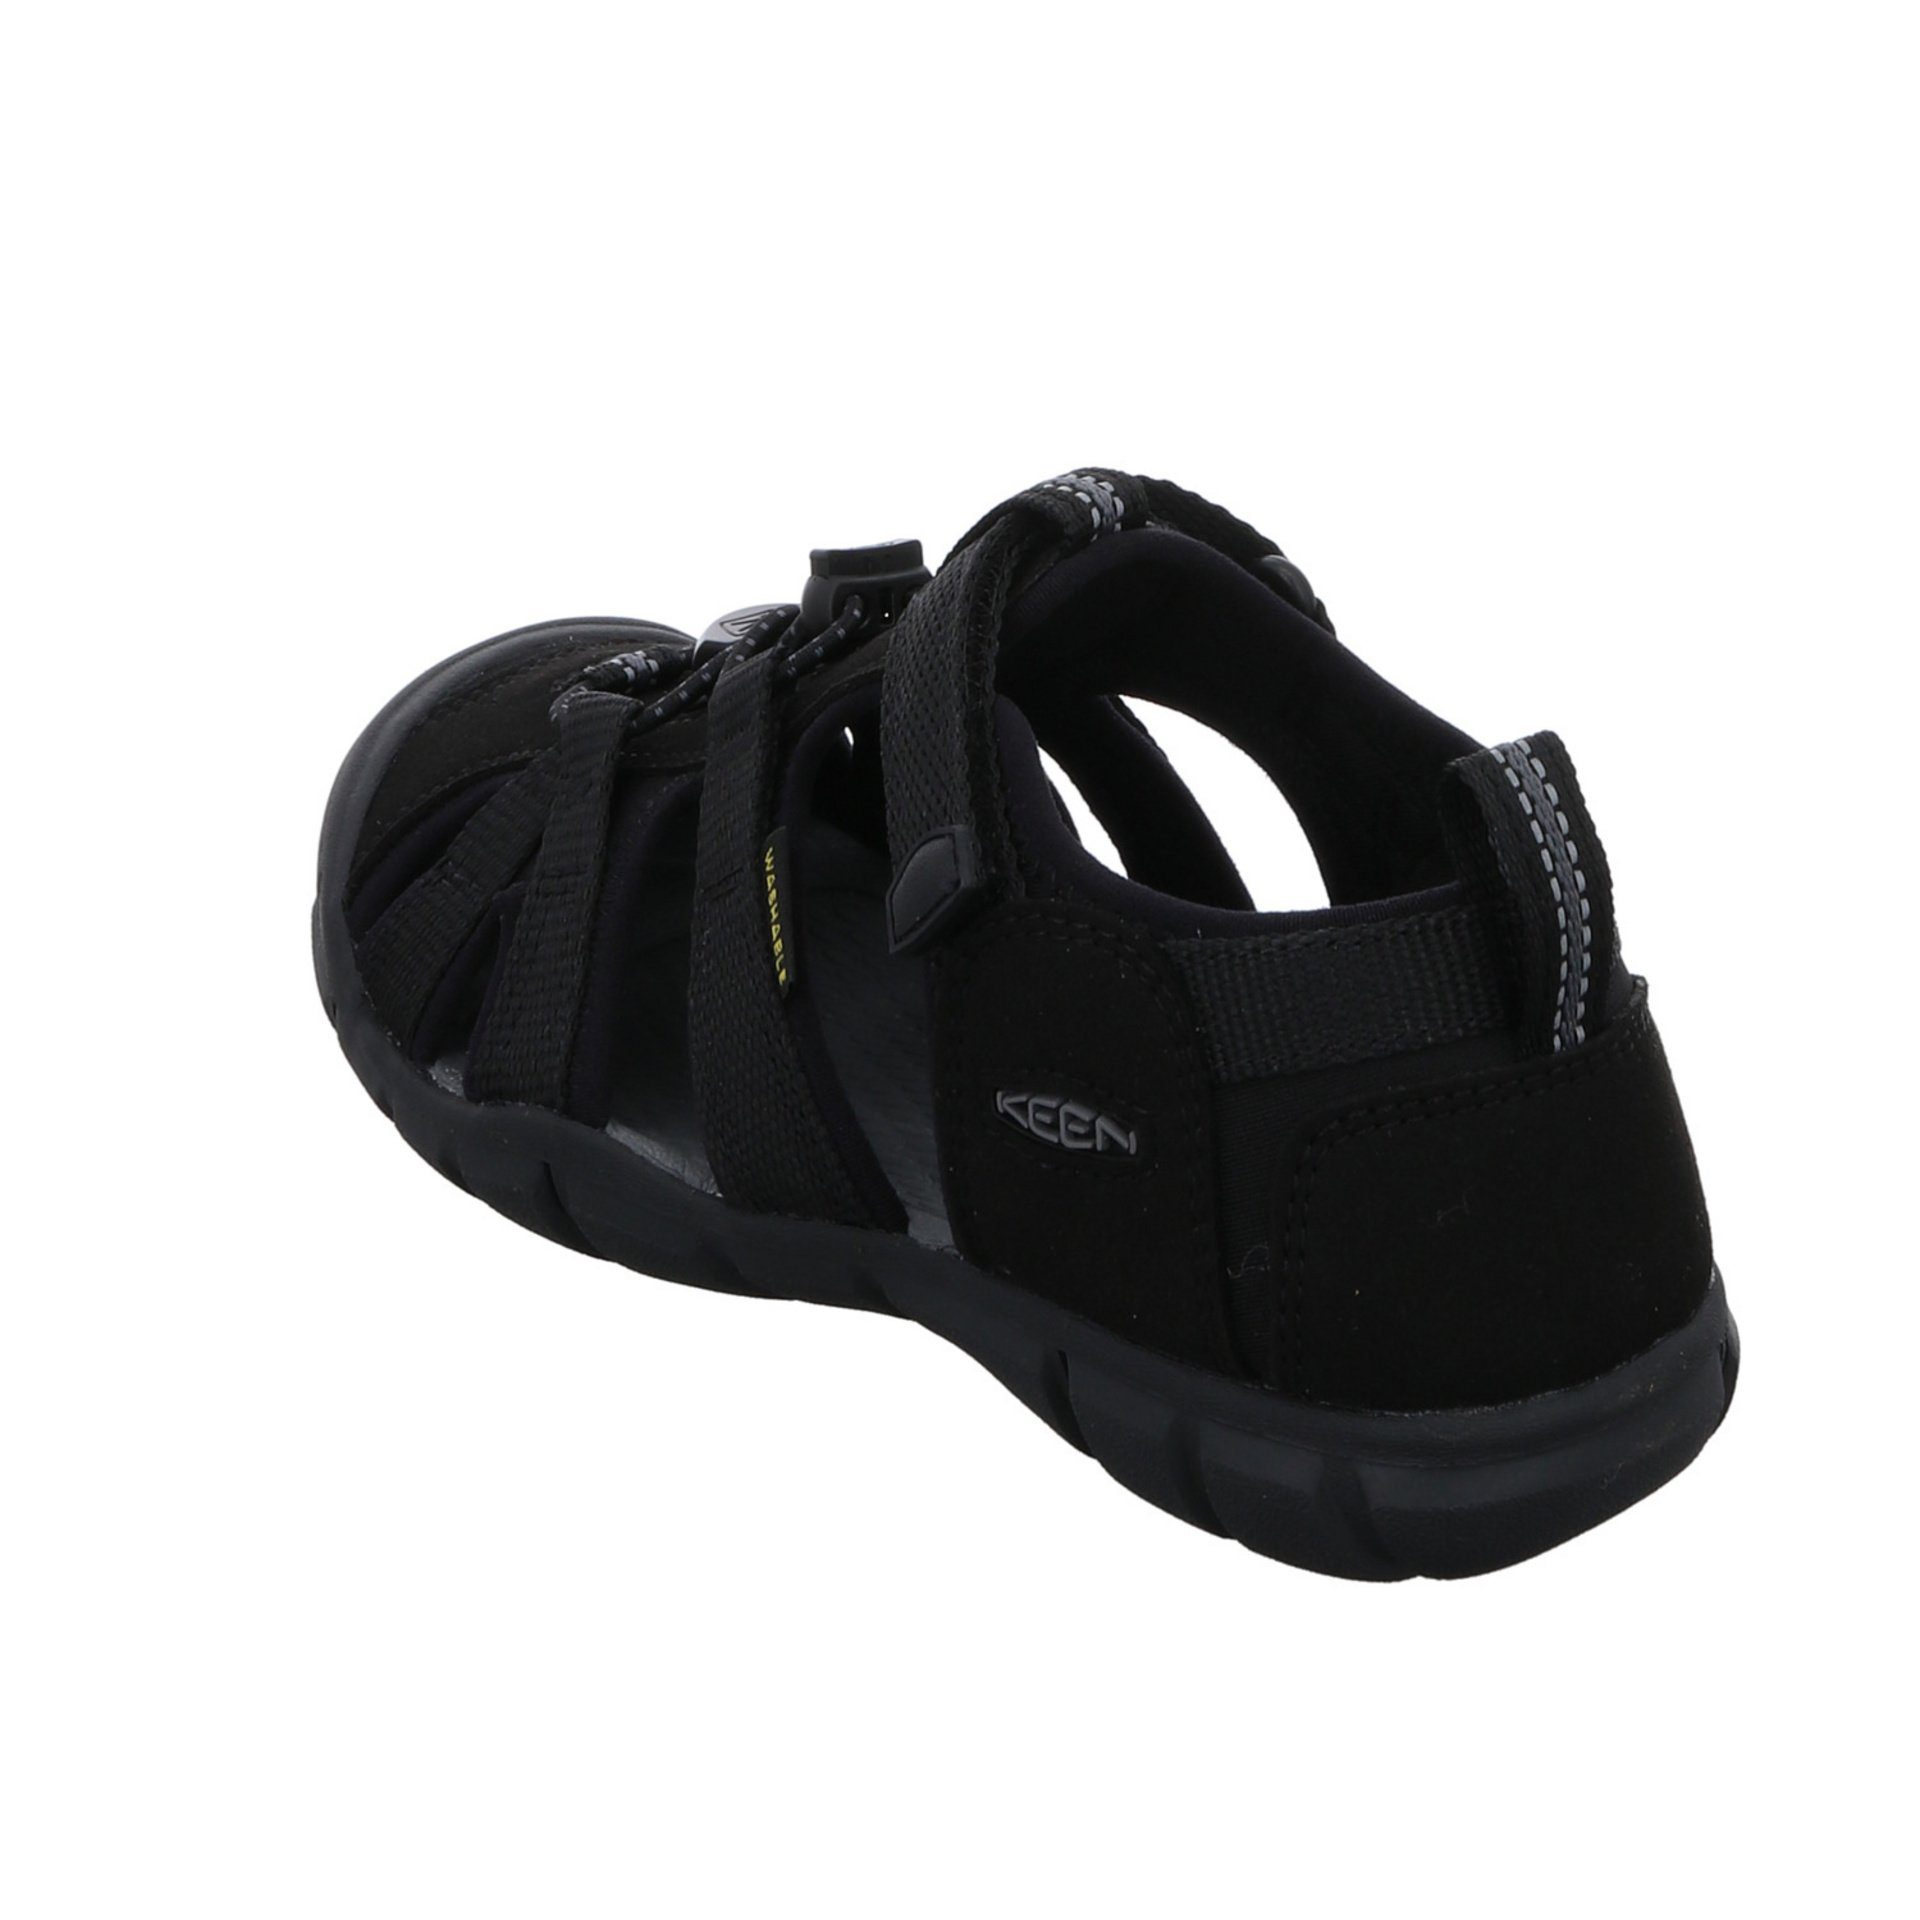 Keen Jungen Sandalen Schuhe Textil schwarz Sandale dunkel